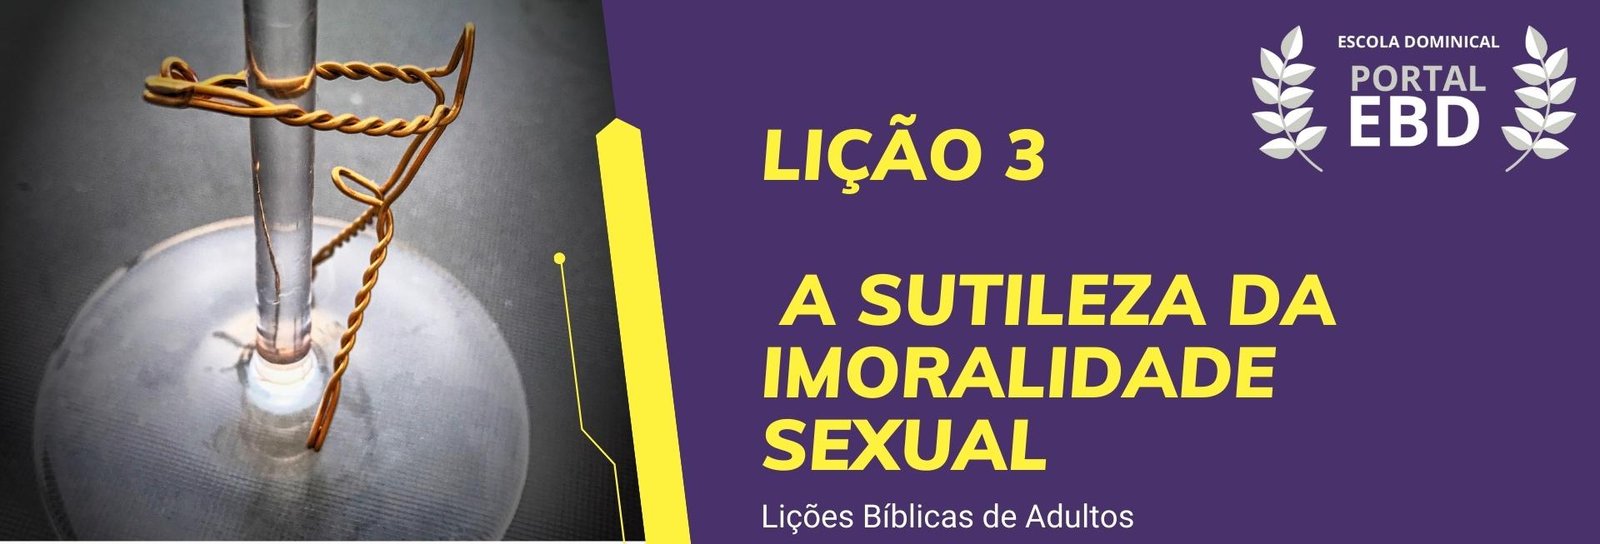 Lição 3 - A sutileza da imoralidade sexual II